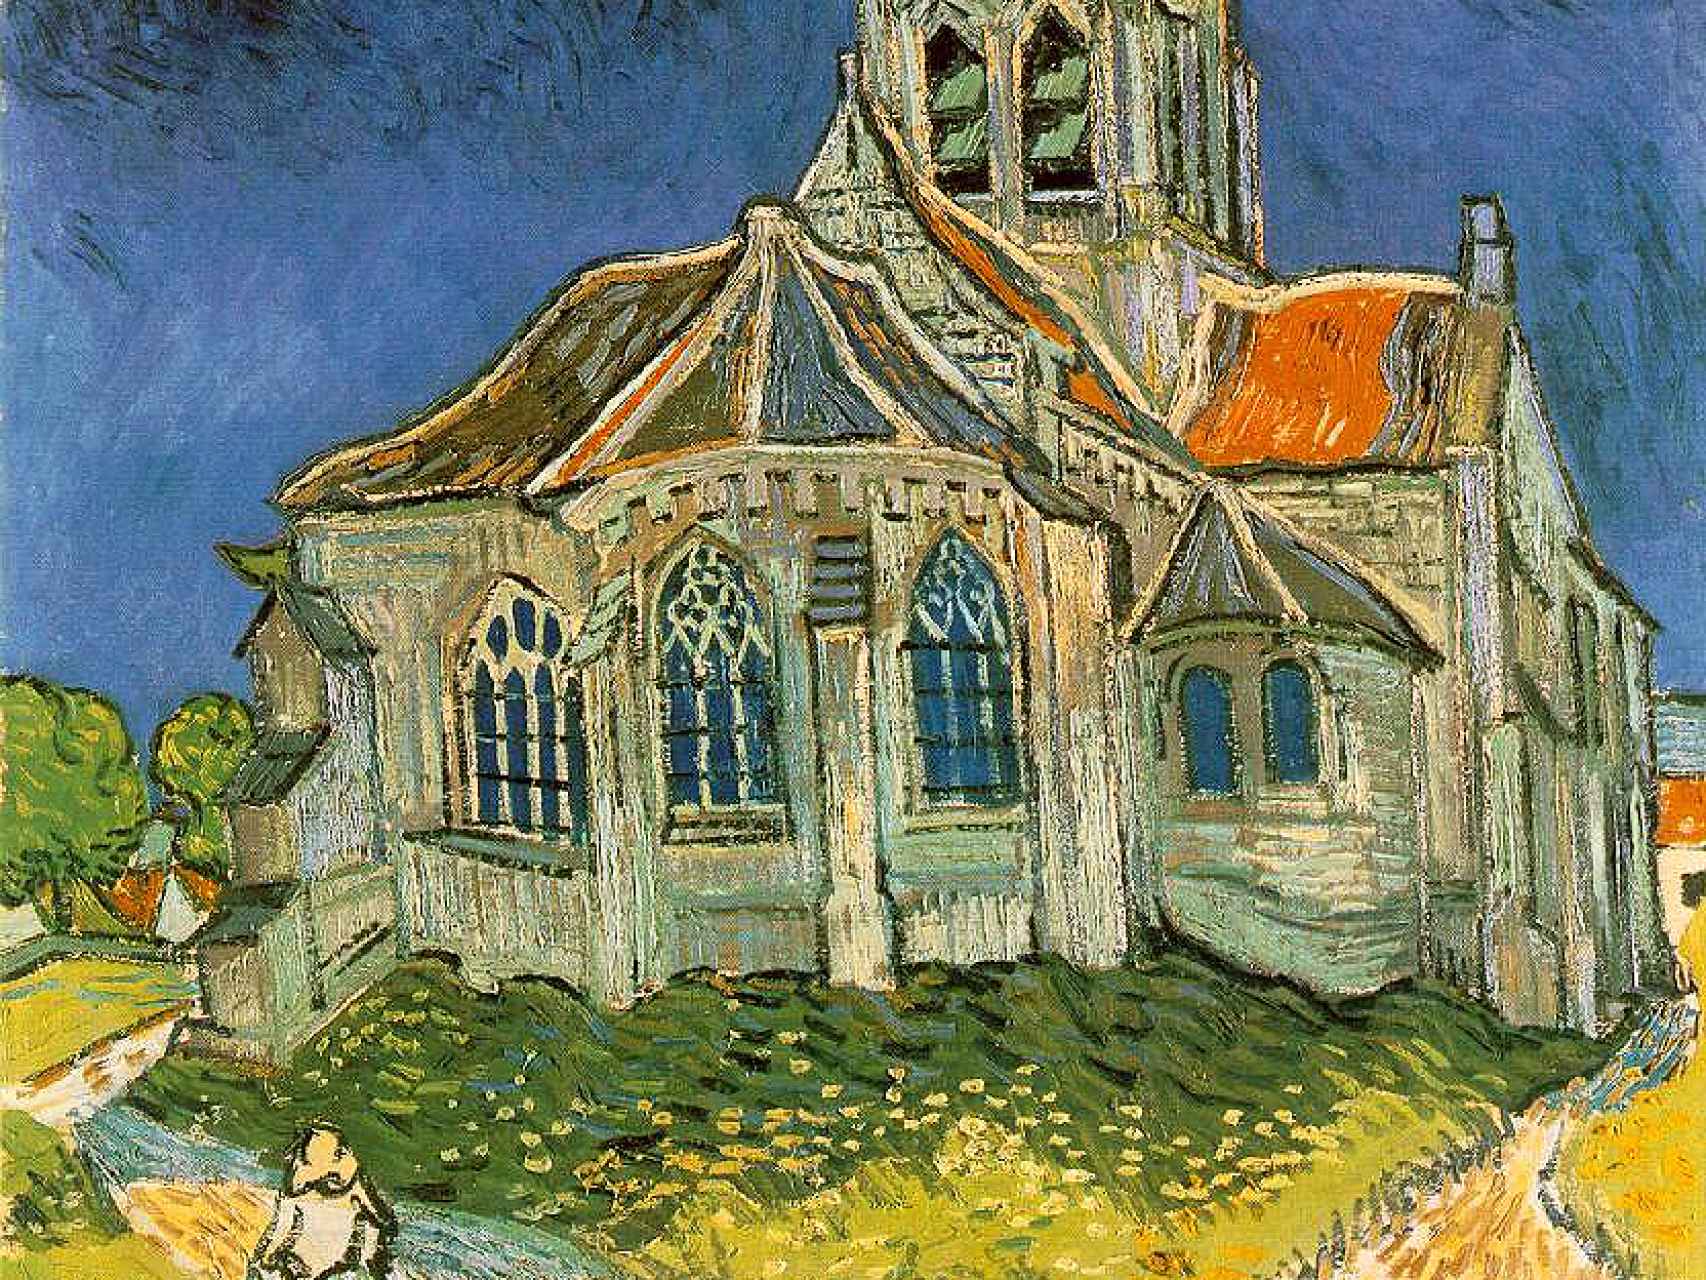 La iglesia de pueblo pintada por Van Gogh.